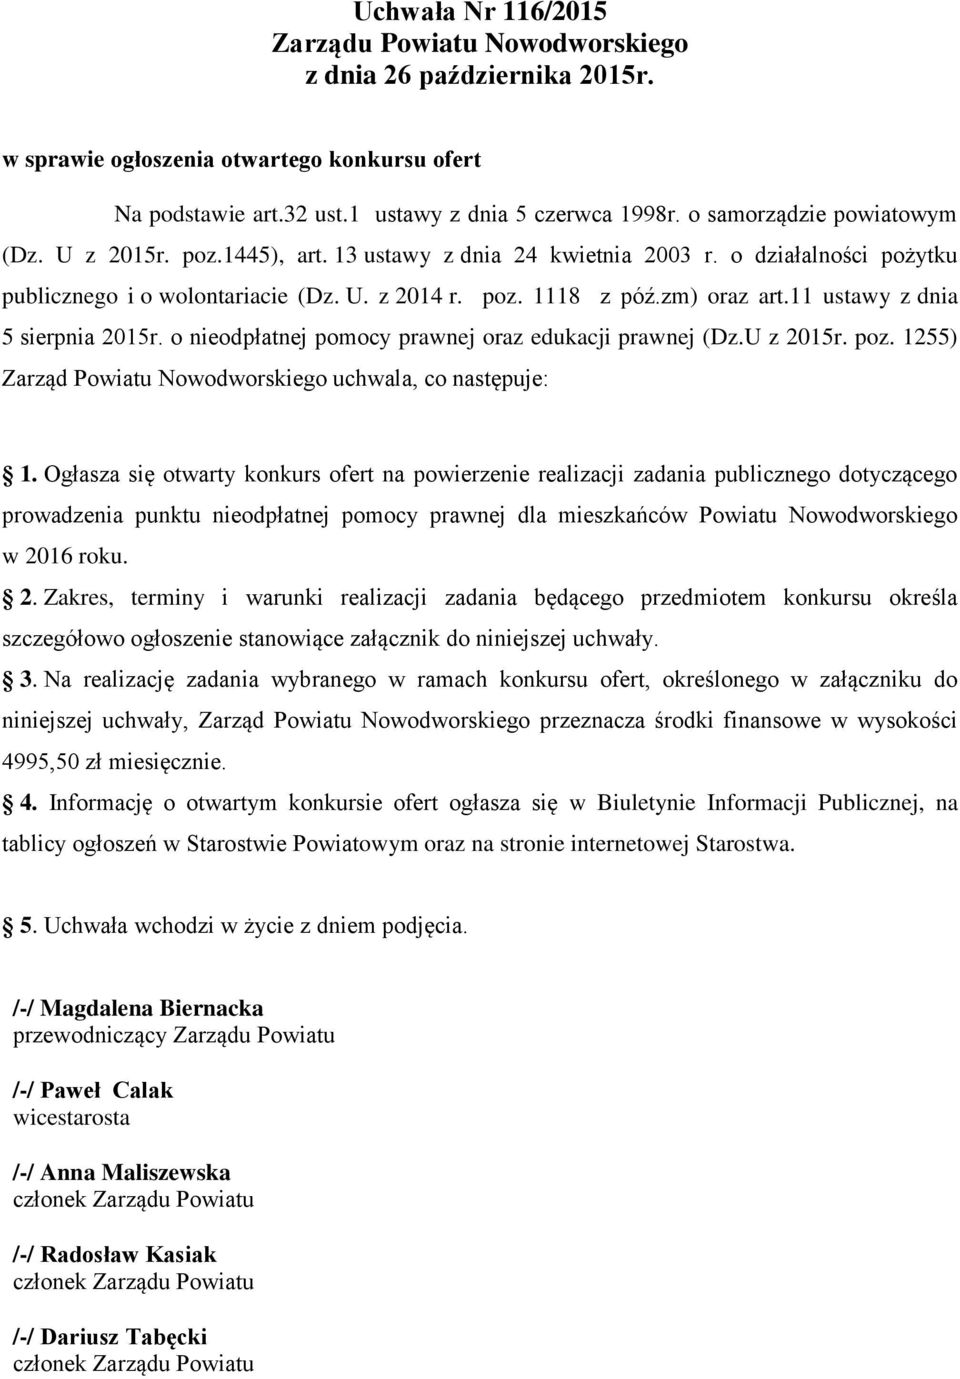 11 ustawy z dnia 5 sierpnia 2015r. o nieodpłatnej pomocy prawnej oraz edukacji prawnej (Dz.U z 2015r. poz. 1255) Zarząd Powiatu Nowodworskiego uchwala, co następuje: 1.